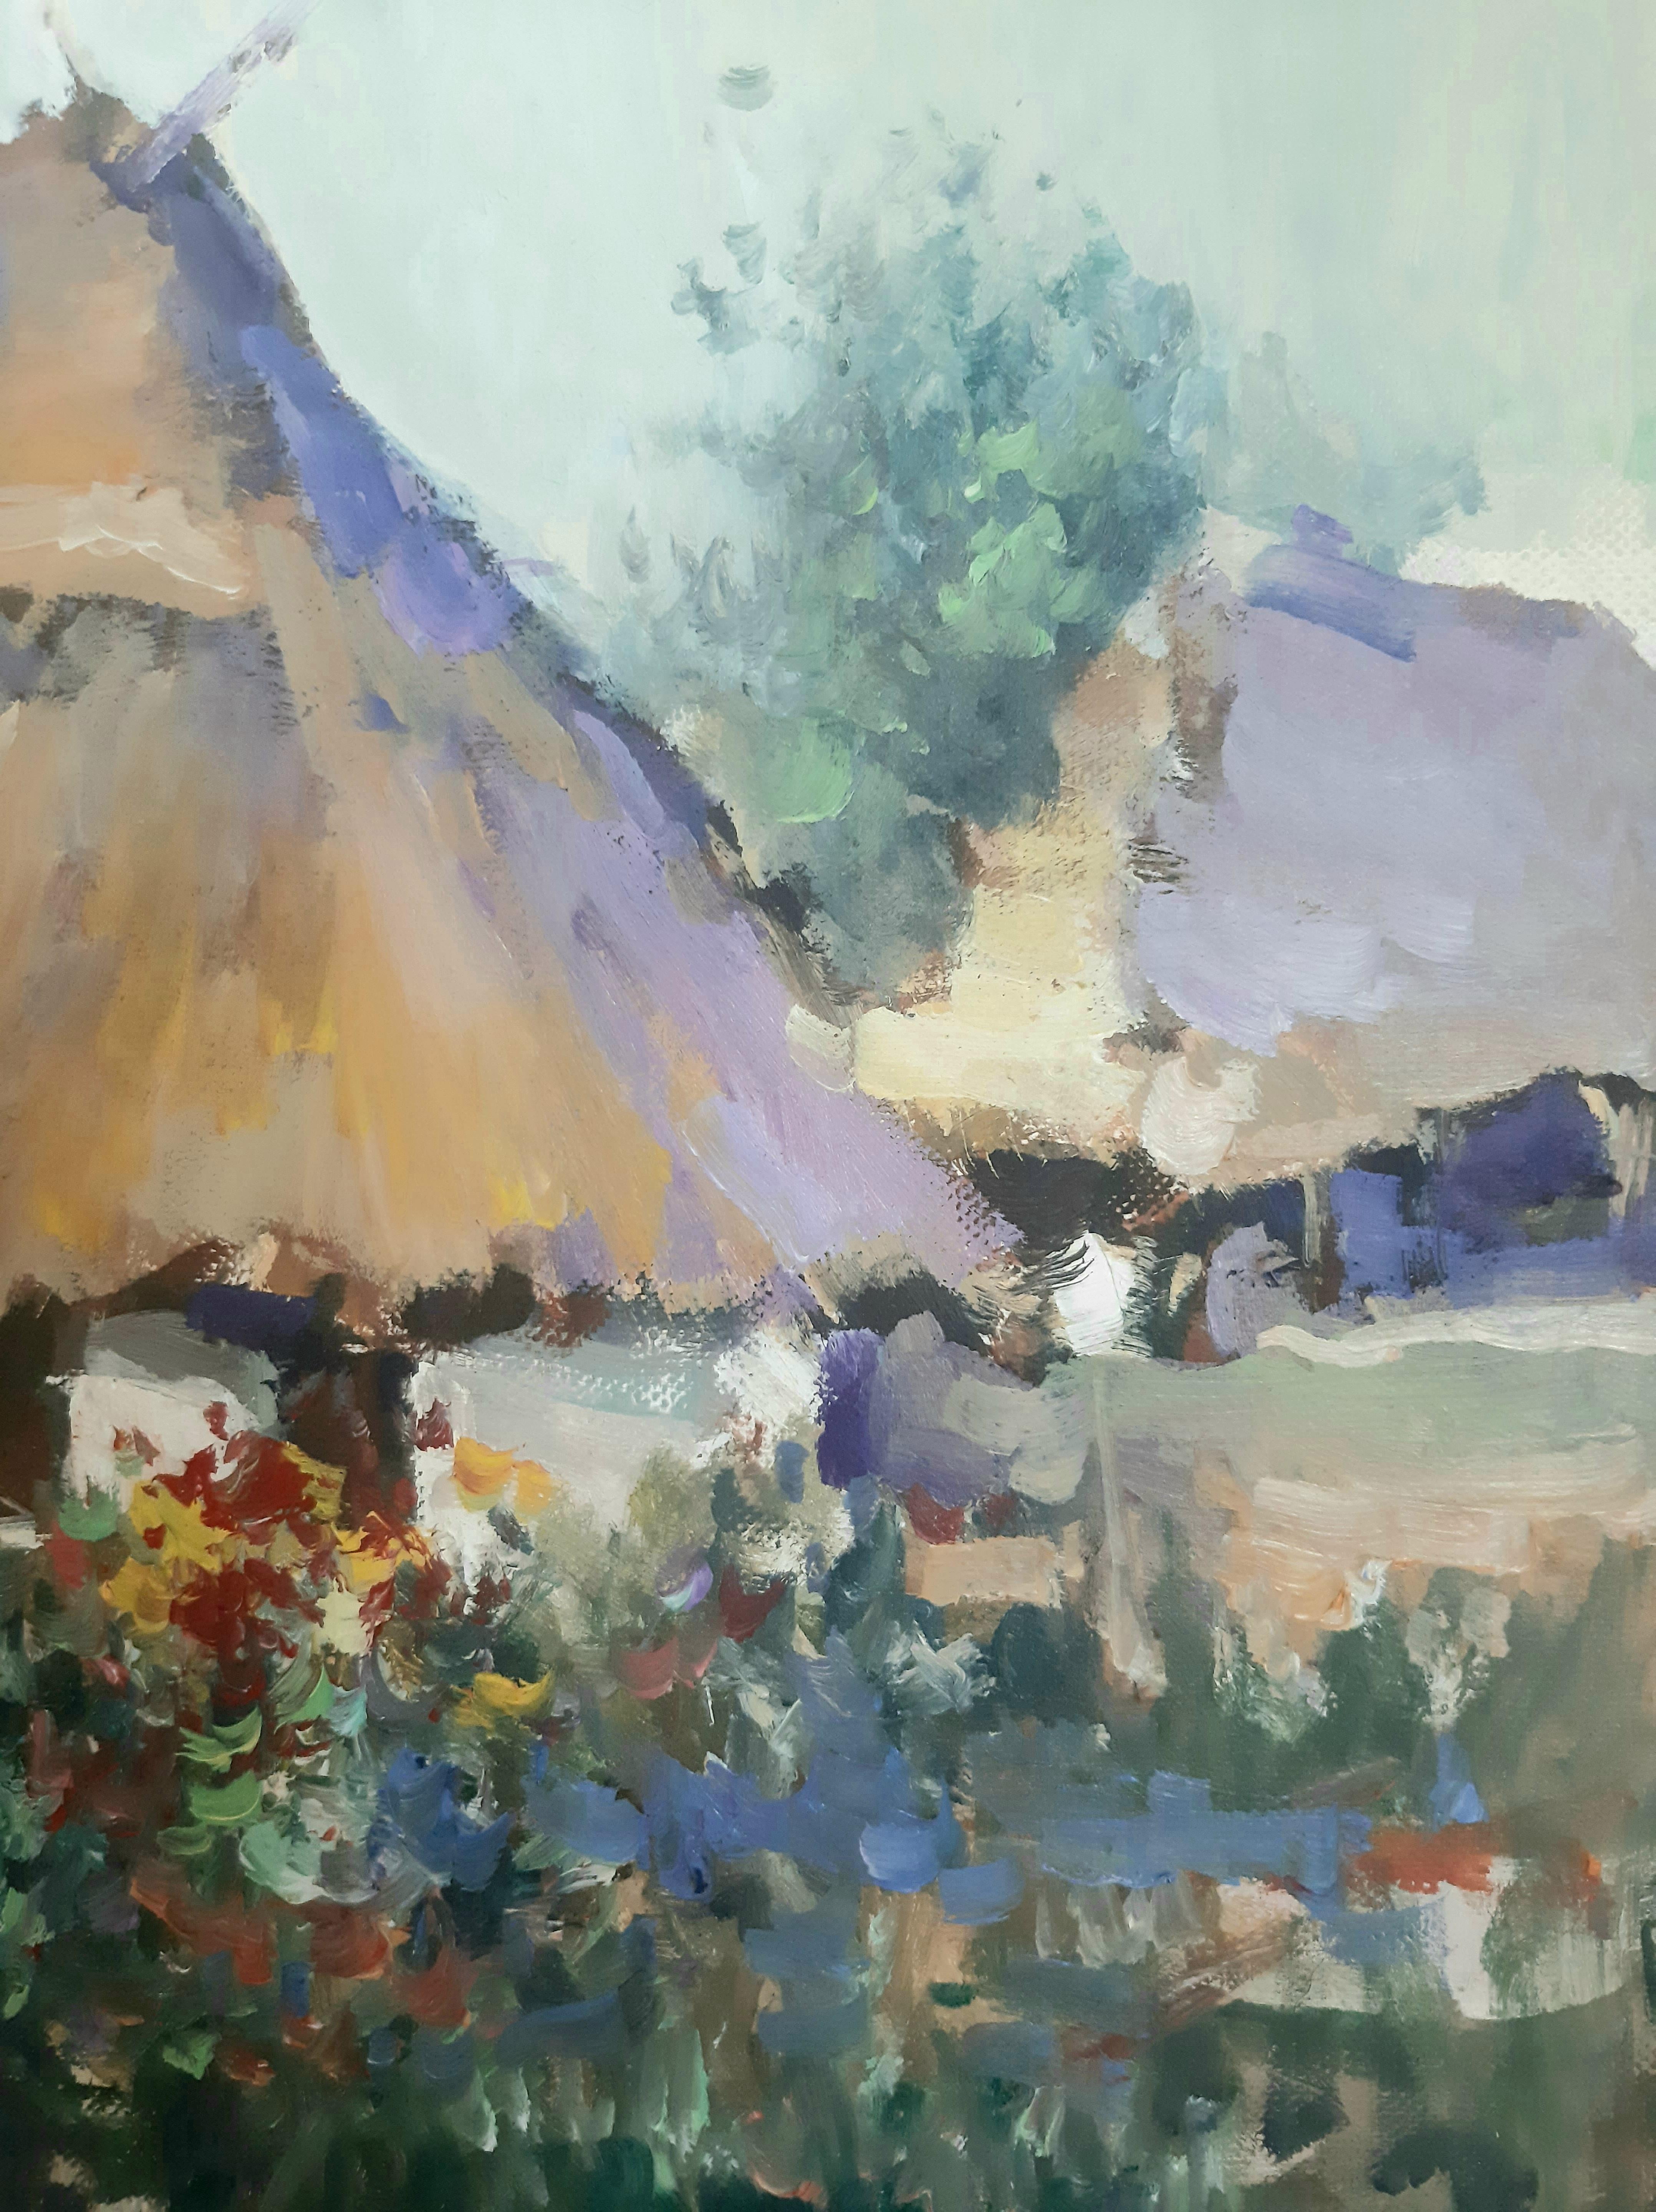 
       Cette peinture à l'huile dévoile une belle image d'une maison de campagne, comme tirée d'un conte de fées. Son toit de chaume et ses fenêtres, entourés des arômes d'un jardin en fleurs, créent un sentiment de confort et de chaleur. Avec ce